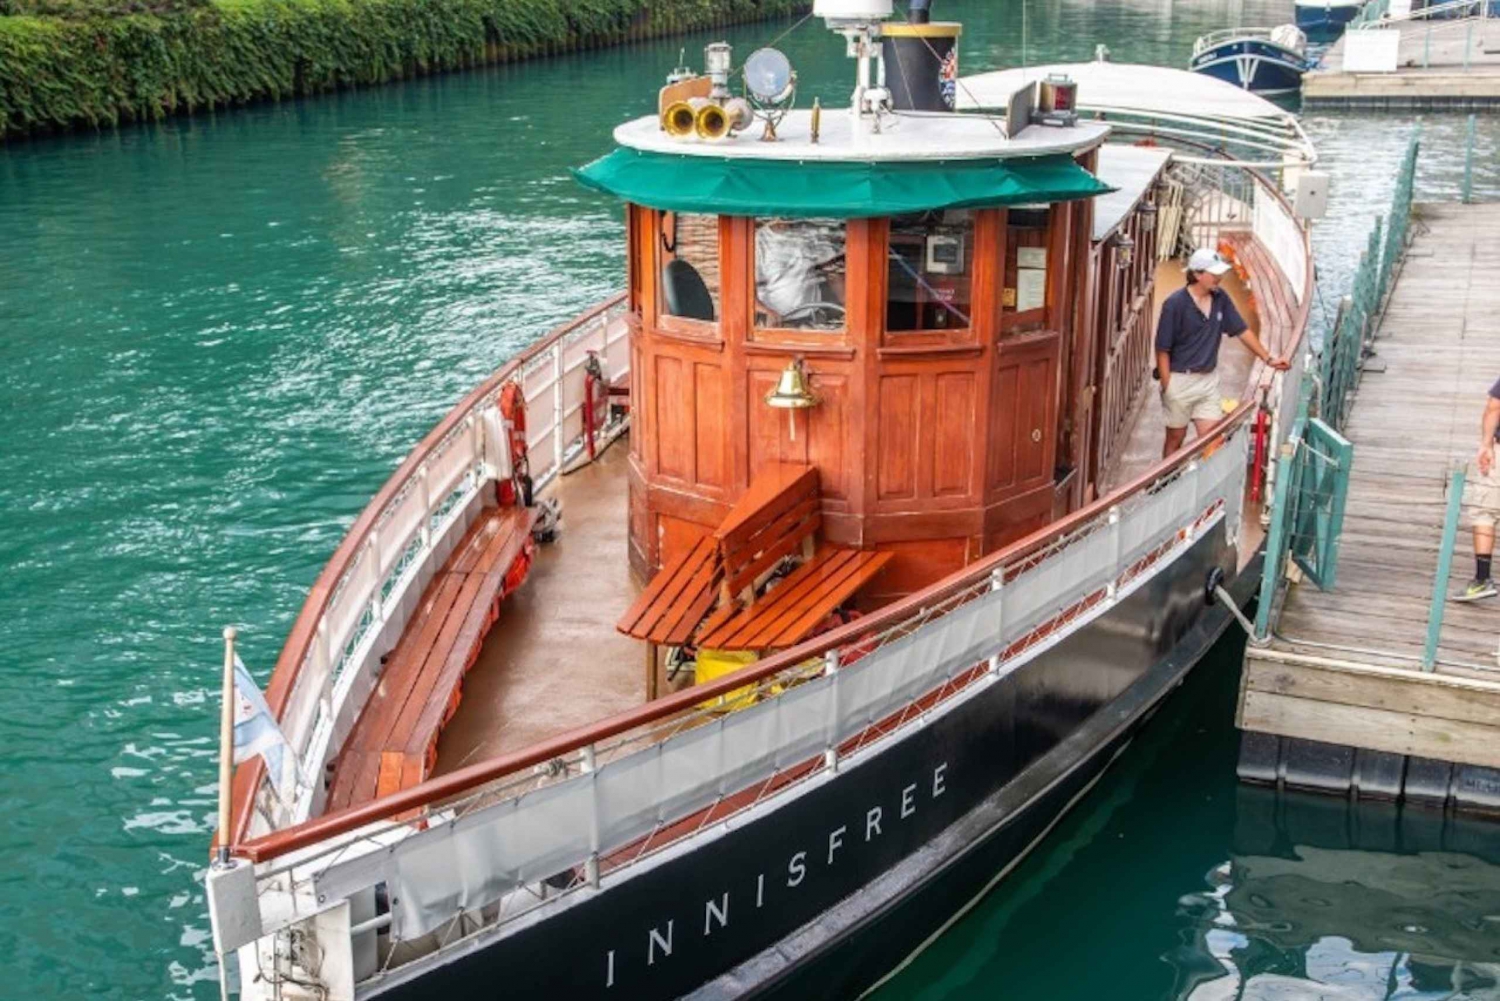 Chicago River: Historic Small Boat Architecture River Tour